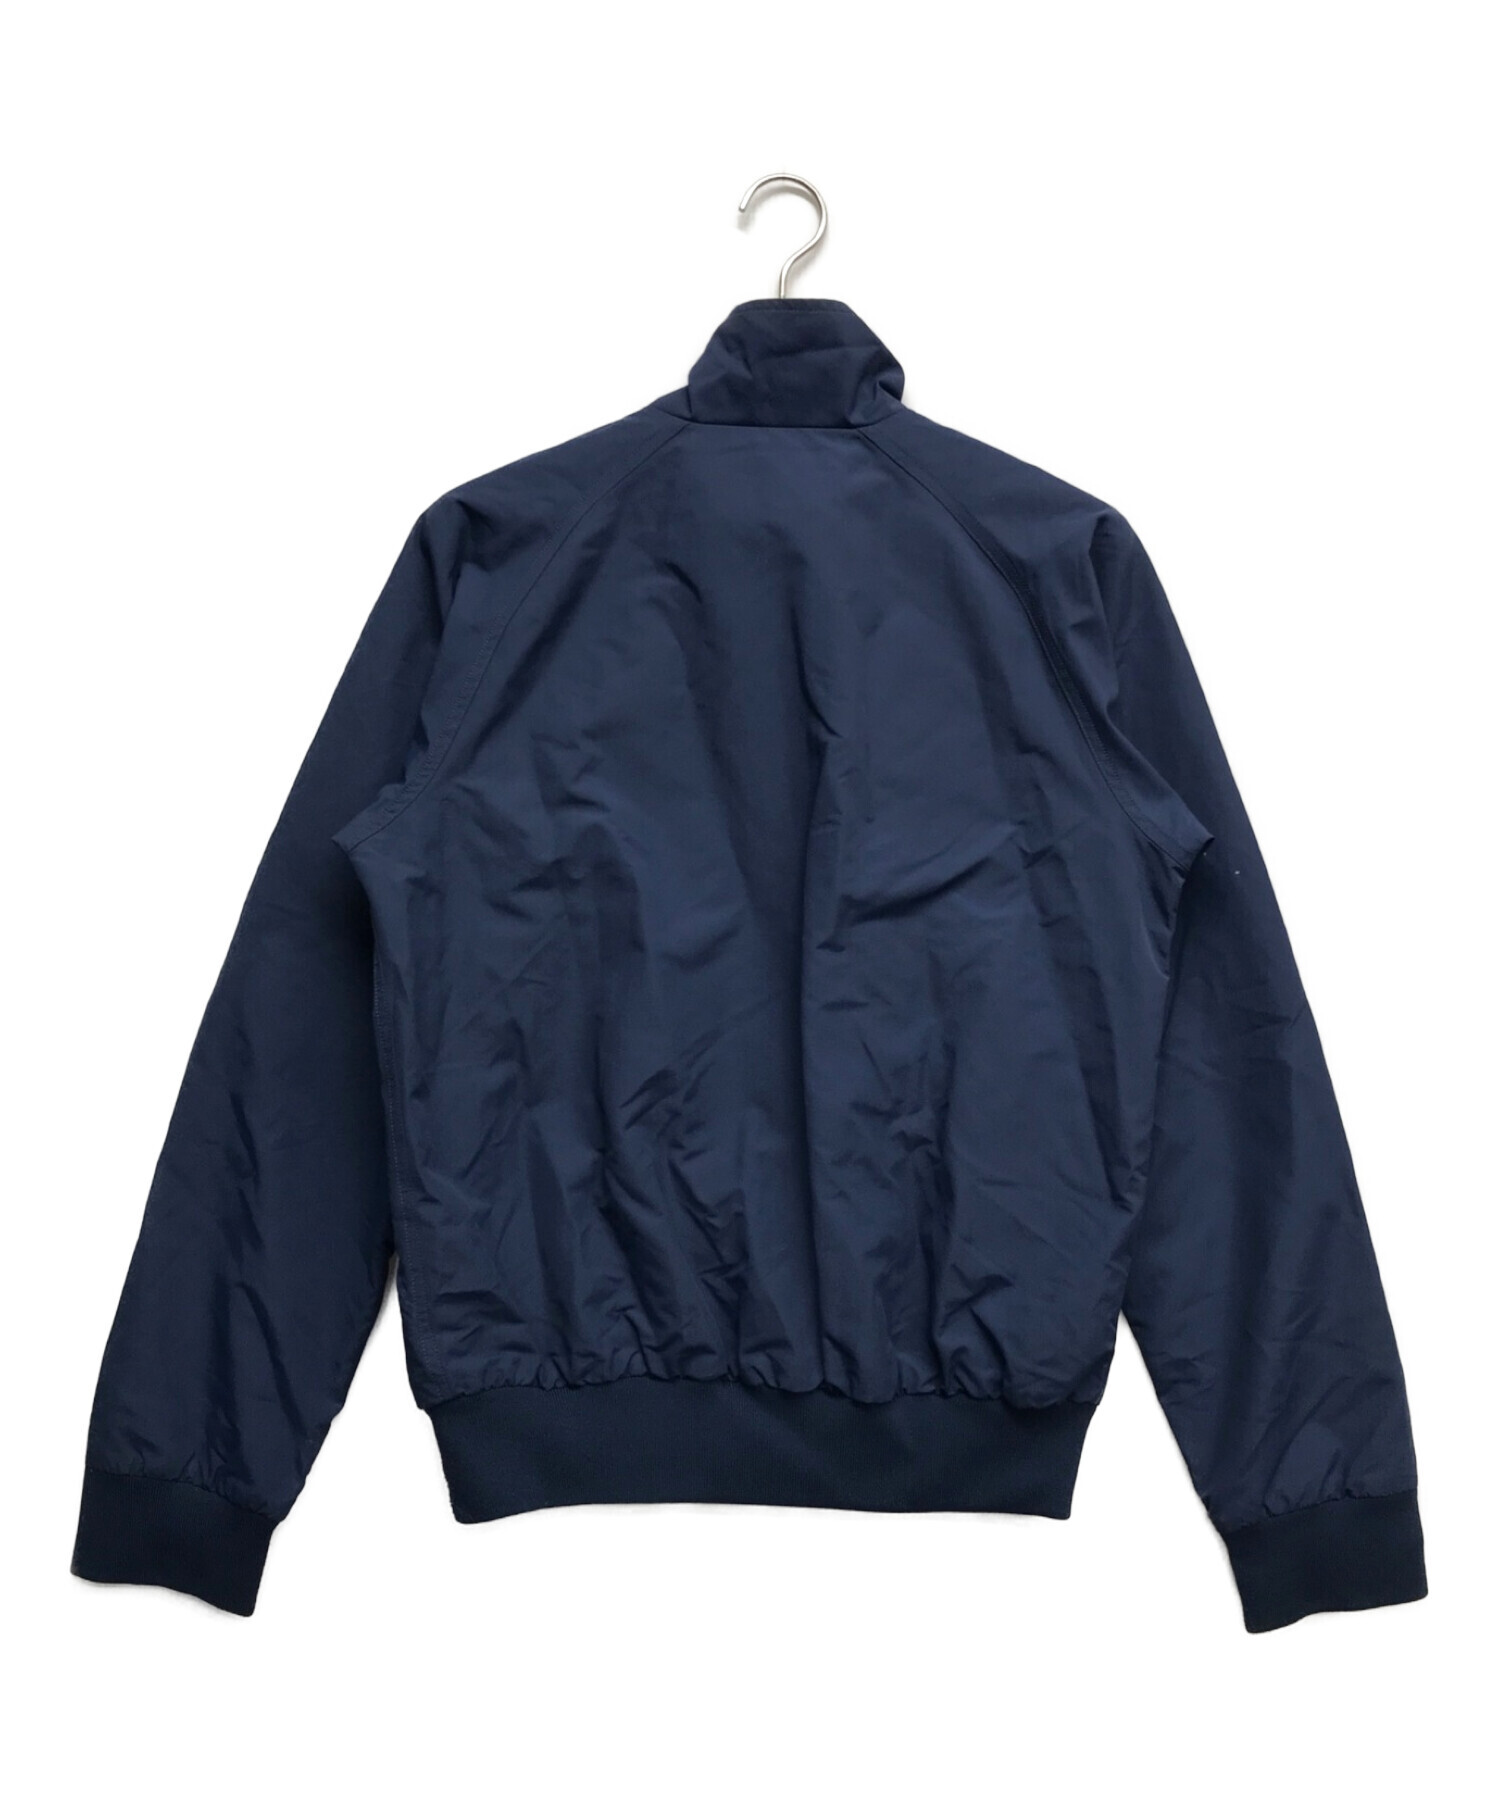 Patagonia (パタゴニア) バギーズジャケット ブルー サイズ:S